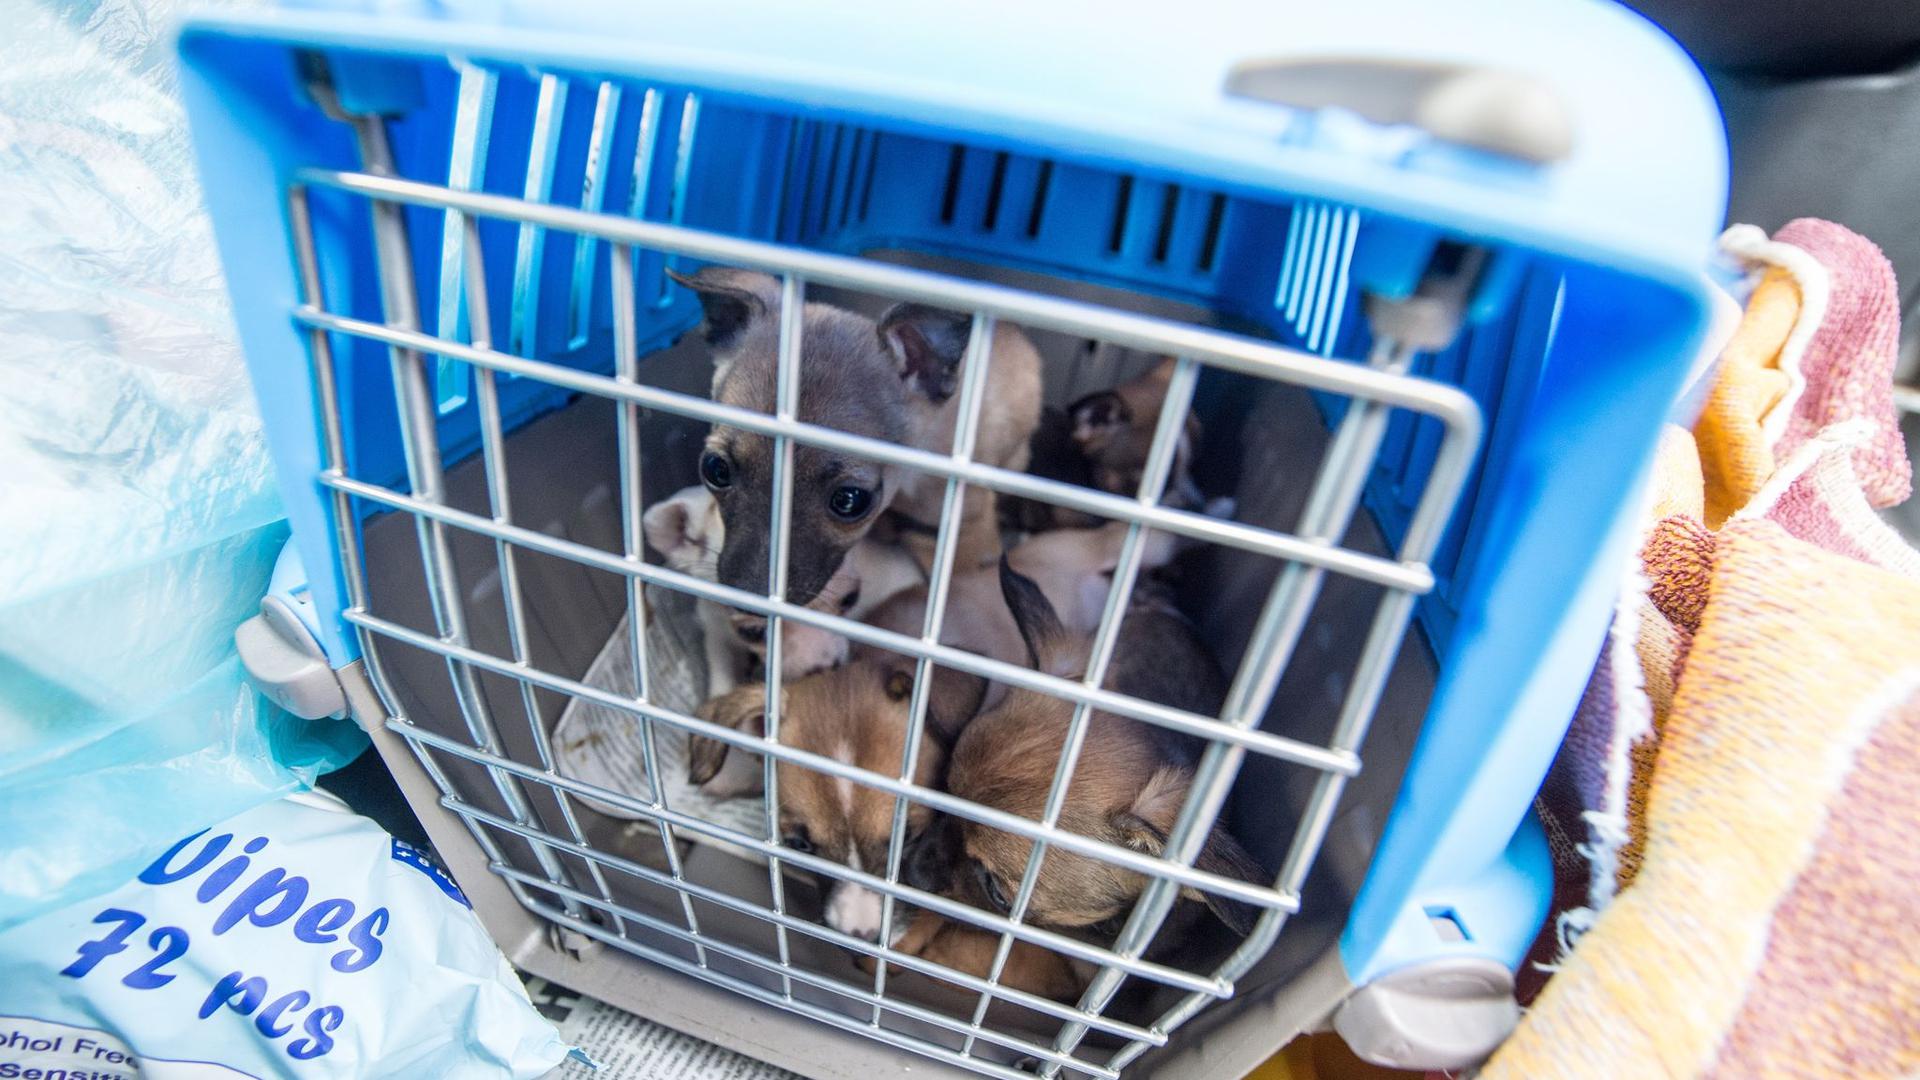 Offenbar boomt der illegale Handel besonders mit Welpen und Katzen in der Corona-Krise: Nach Angaben des Deutschen Tierschutzbundes nahm er im vergangenen Jahr deutlich zu (Archiv).